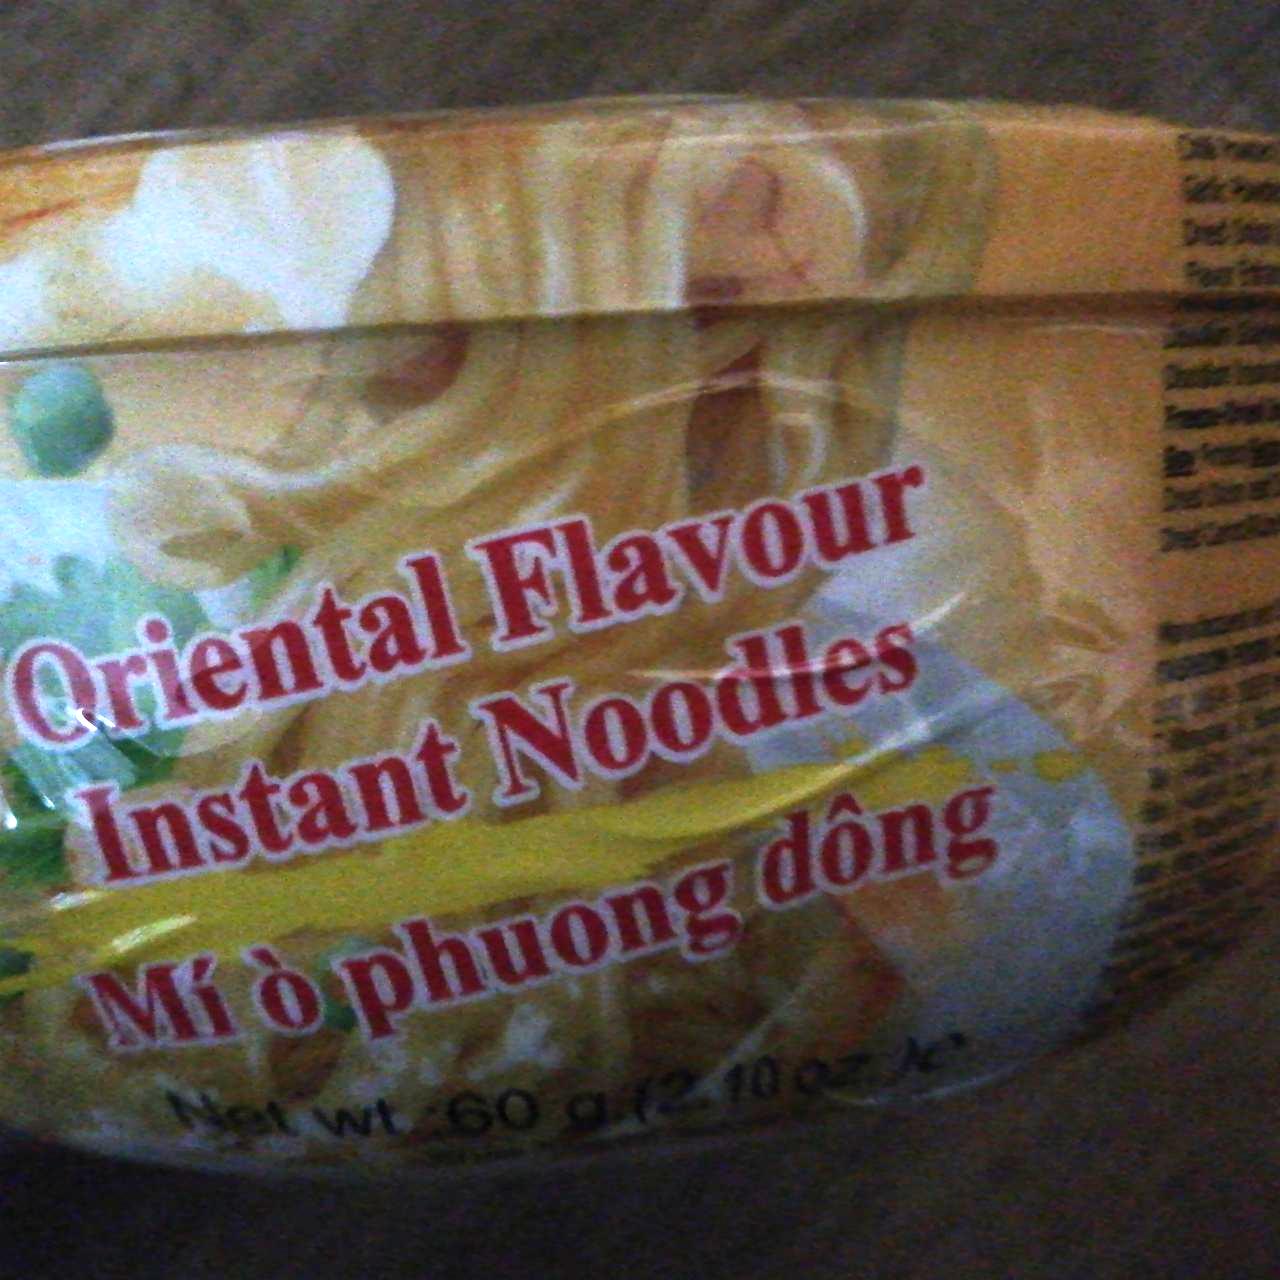 Fotografie - FF Oriental Flavour Instant Noodles